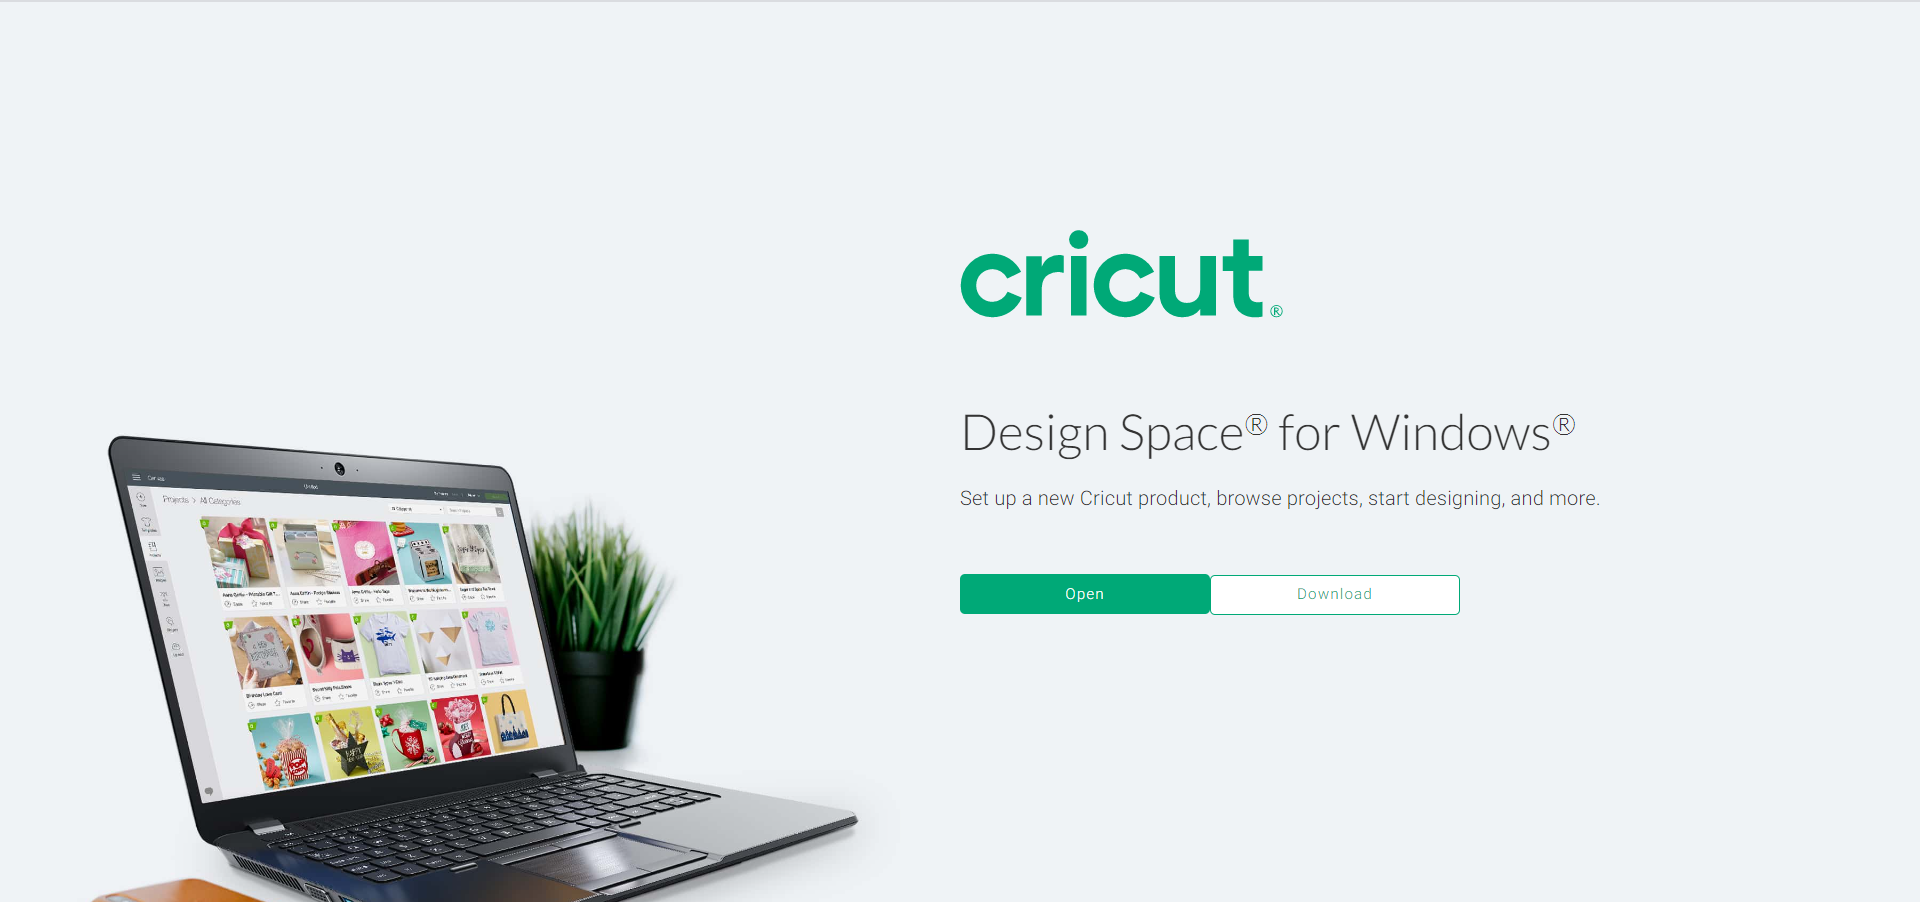 cricut crv001 software download